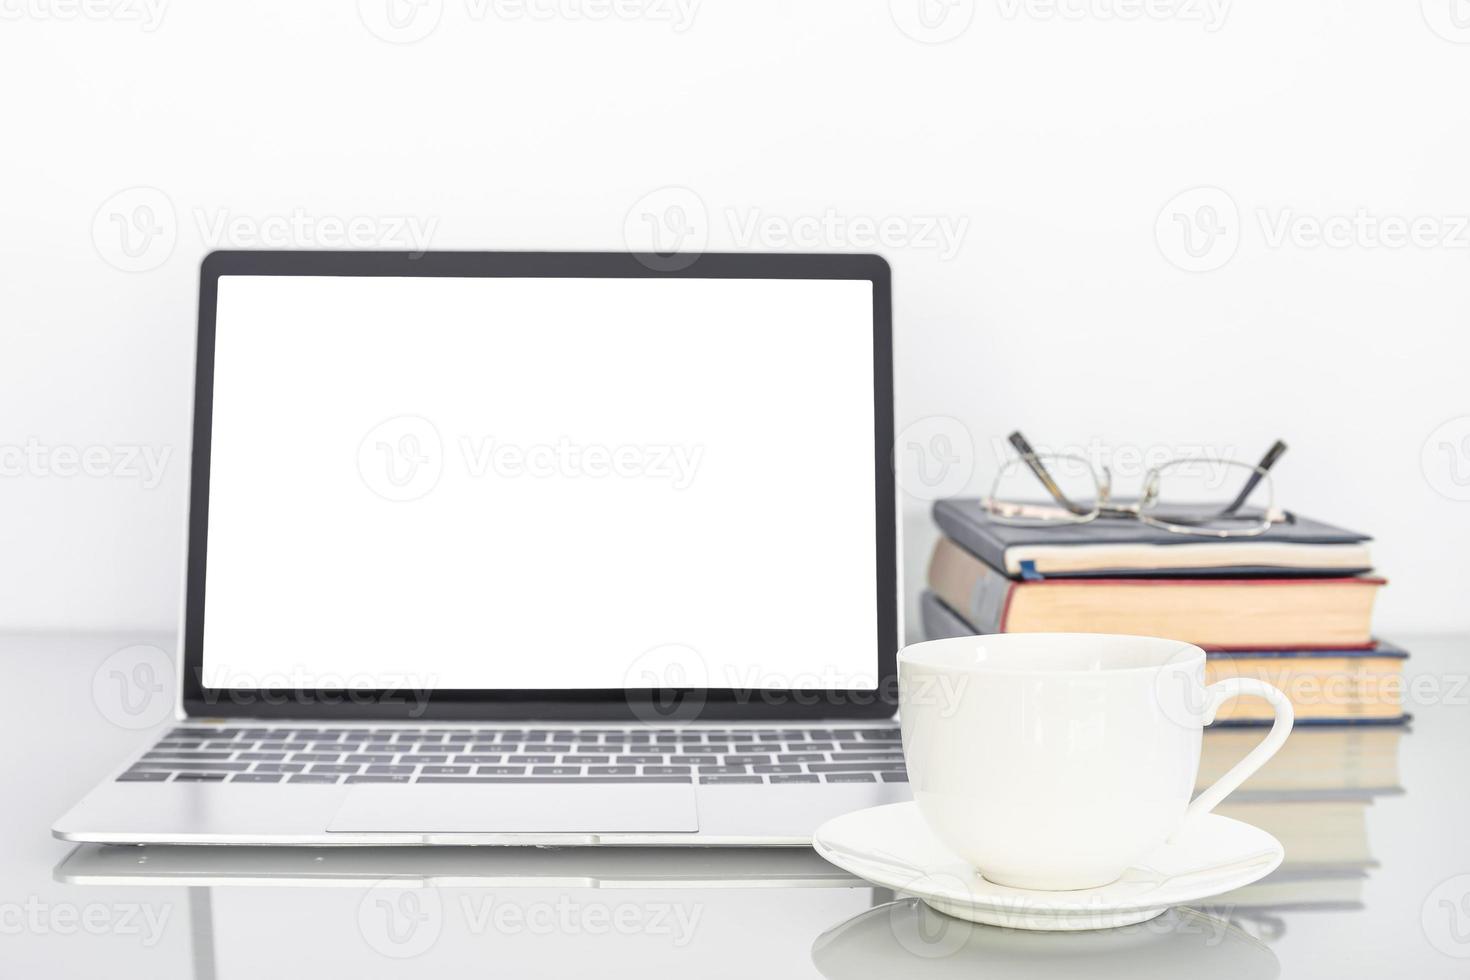 portable Vide écran maquette et café tasse sur table photo